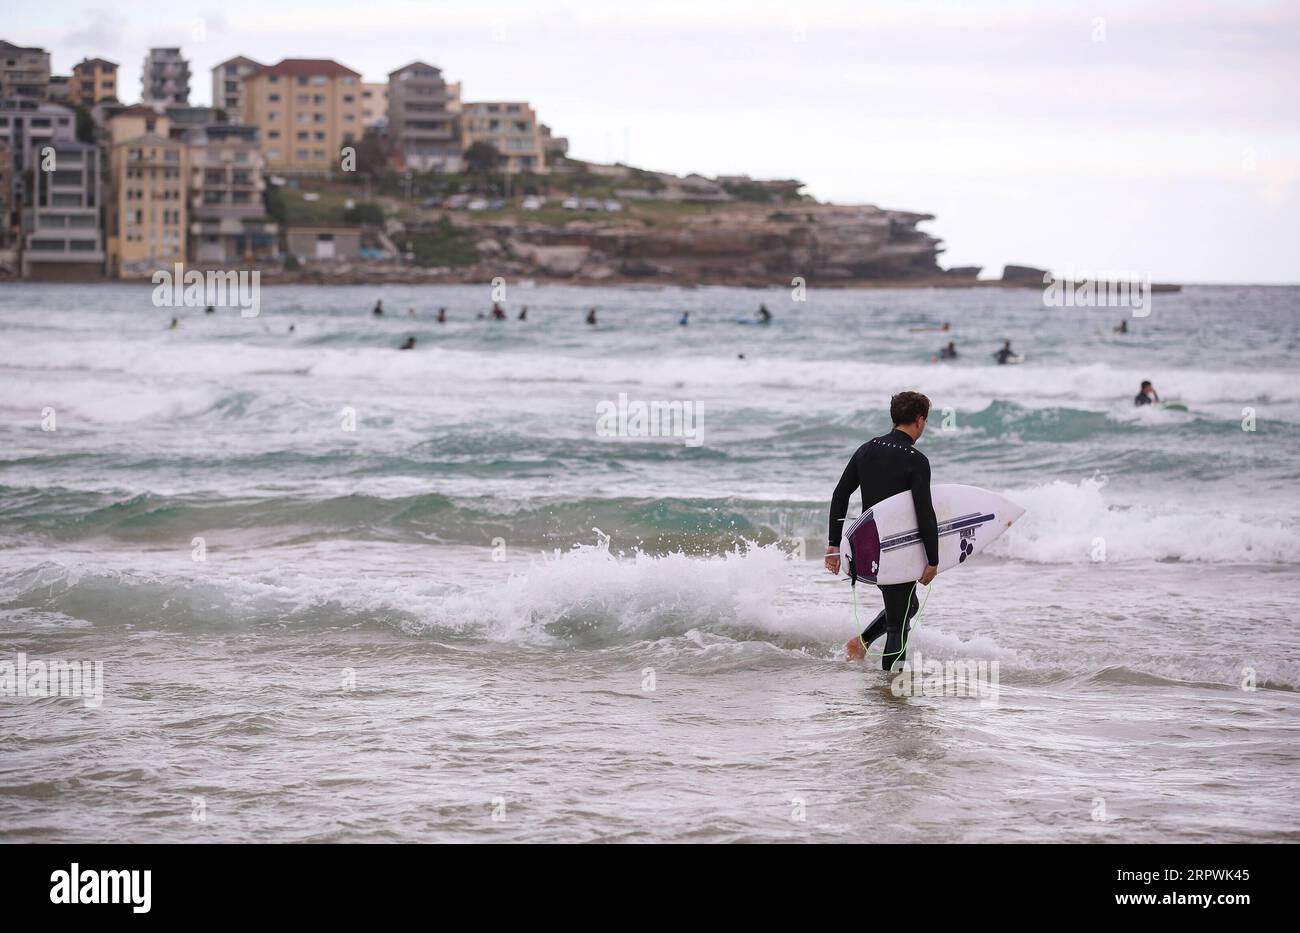 200428 -- SYDNEY, 28. April 2020 -- Ein Surfer spaziert am Bondi Beach in Sydney, Australien, am 28. April 2020 ins Wasser. Hunderte Aussies strömten am Dienstag ins Wasser, als der berühmte Bondi Beach für Surfer und Schwimmer wieder geöffnet wurde, nachdem er aufgrund von COVID-19 geschlossen wurde. AUSTRALIEN-SYDNEY-COVID-19-BEACH BaixXuefei PUBLICATIONxNOTxINxCHN Stockfoto